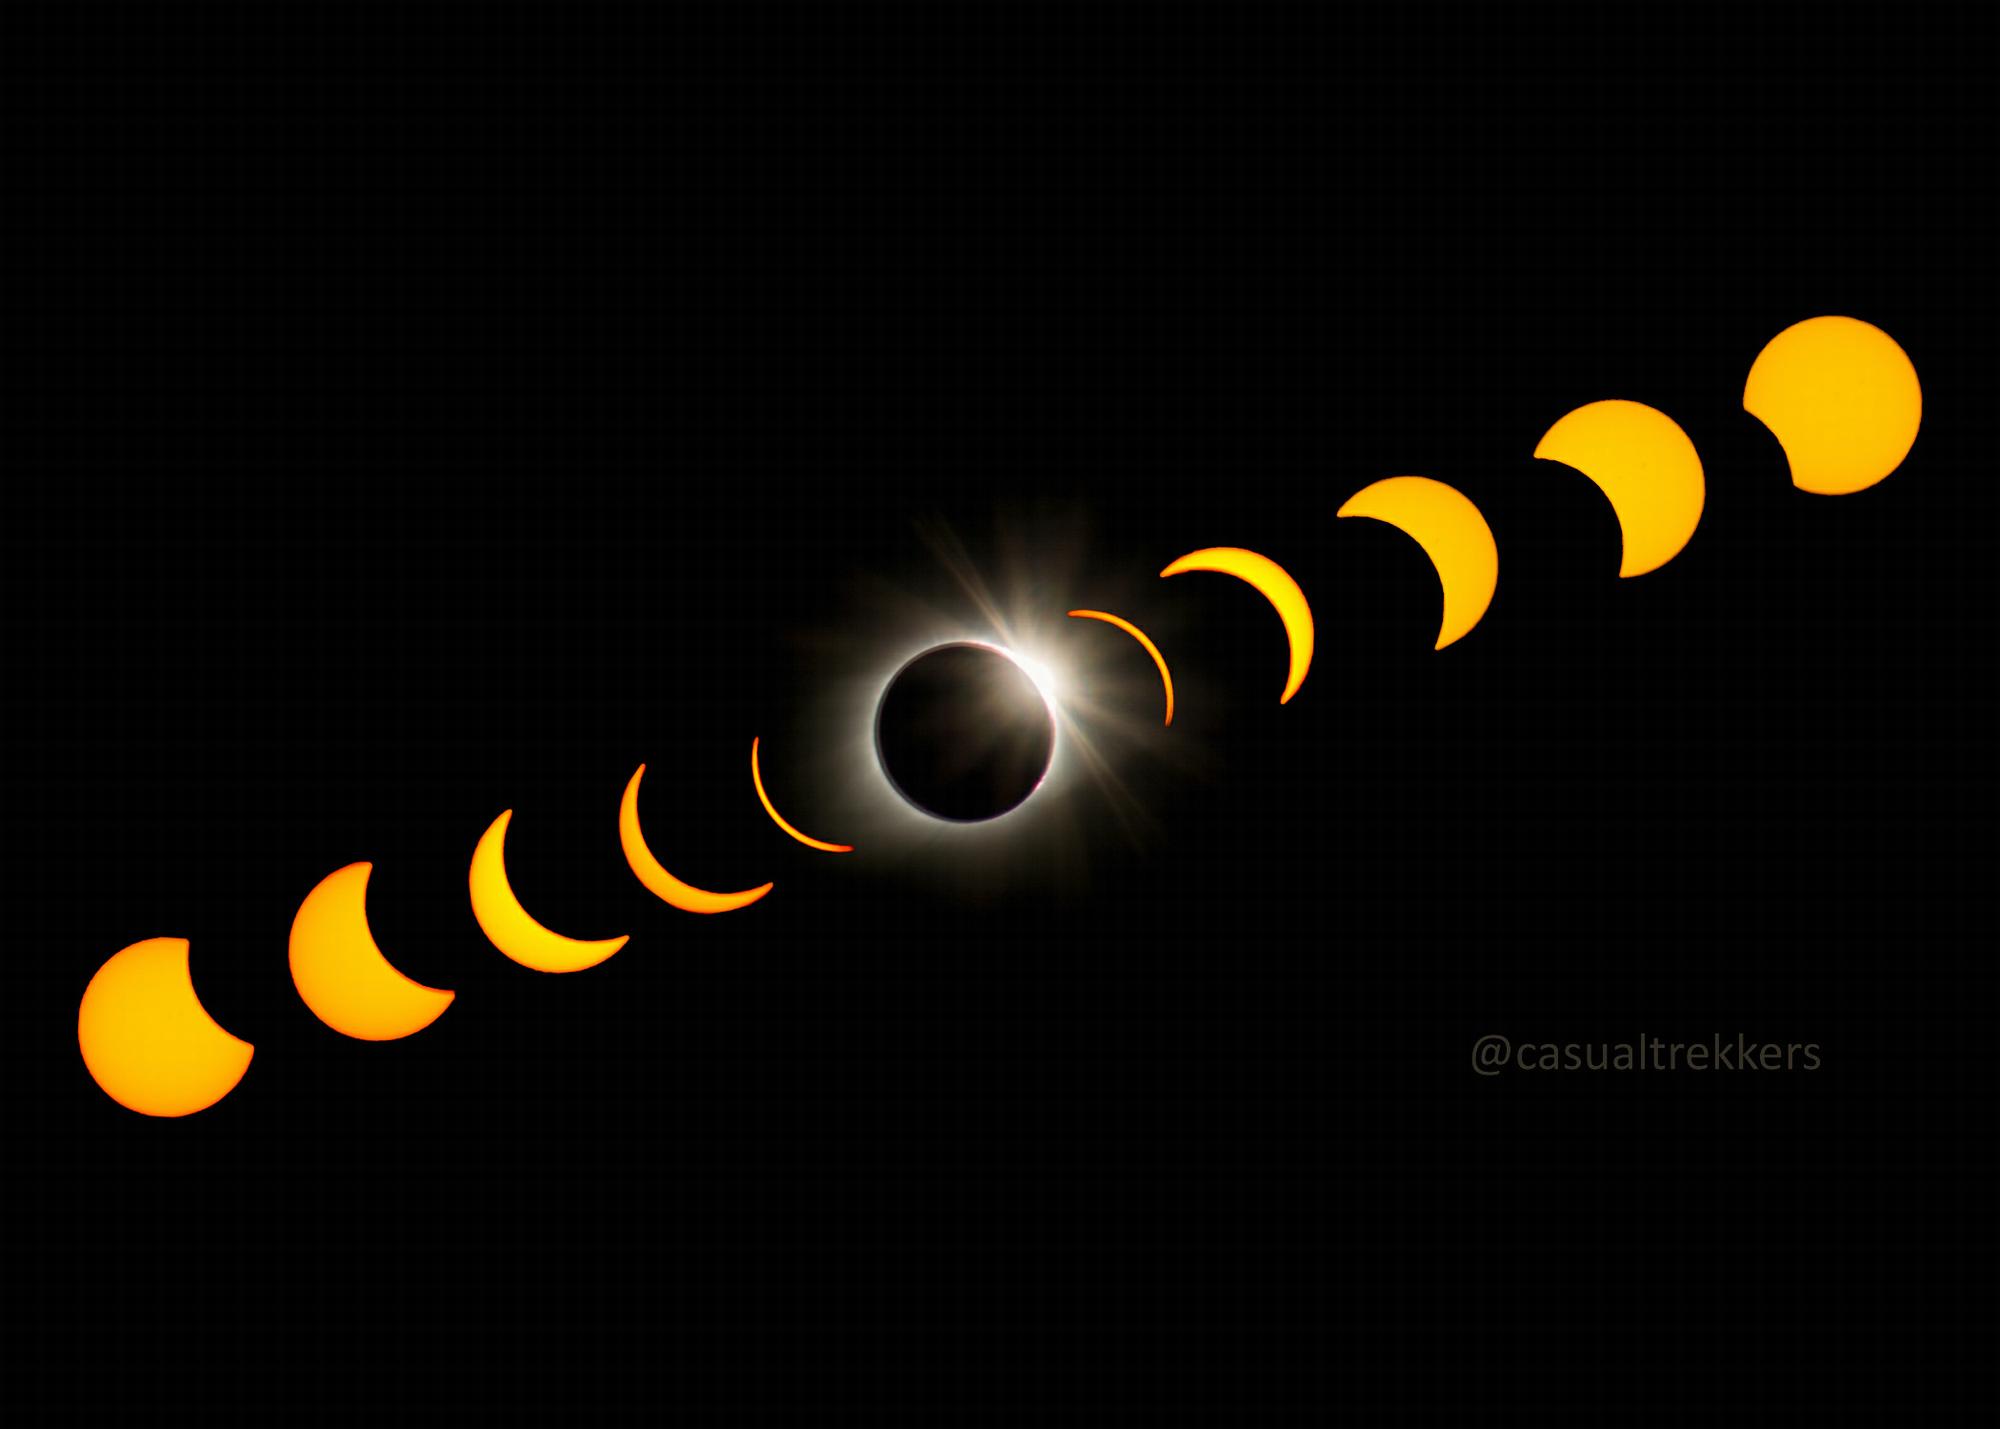 Solar Eclipse April 8 2024